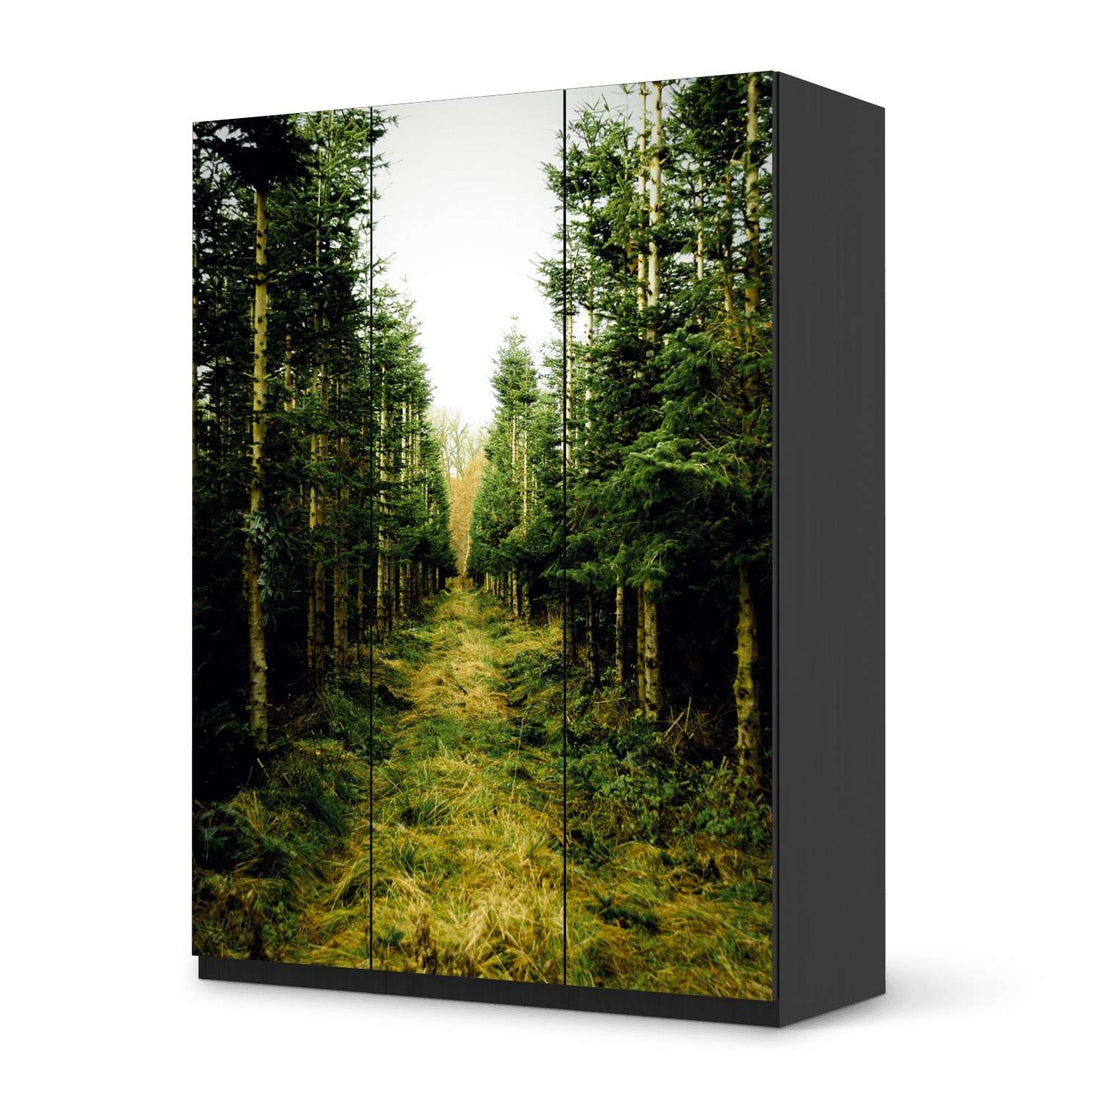 Folie für Möbel Green Alley - IKEA Pax Schrank 201 cm Höhe - 3 Türen - schwarz